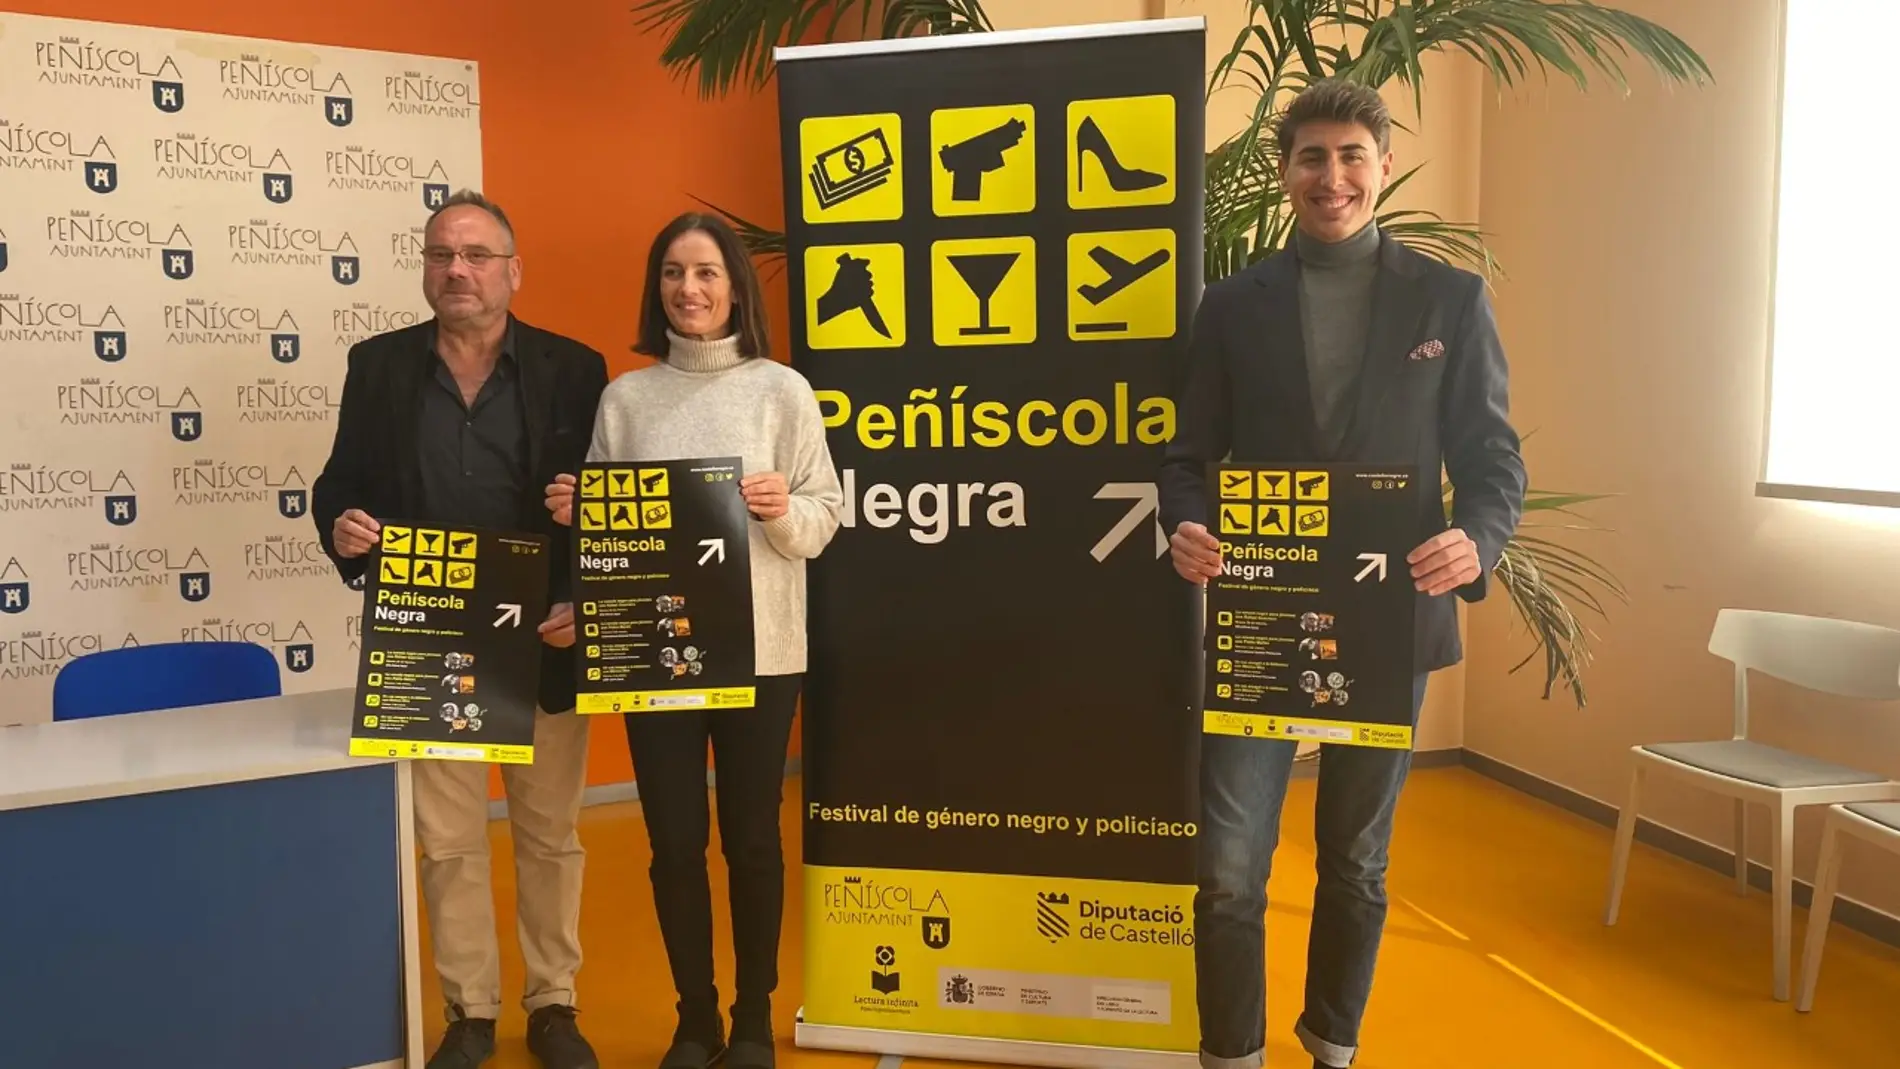 Peñiscola negra arranca su octava edición en los centros educativos dell municipio